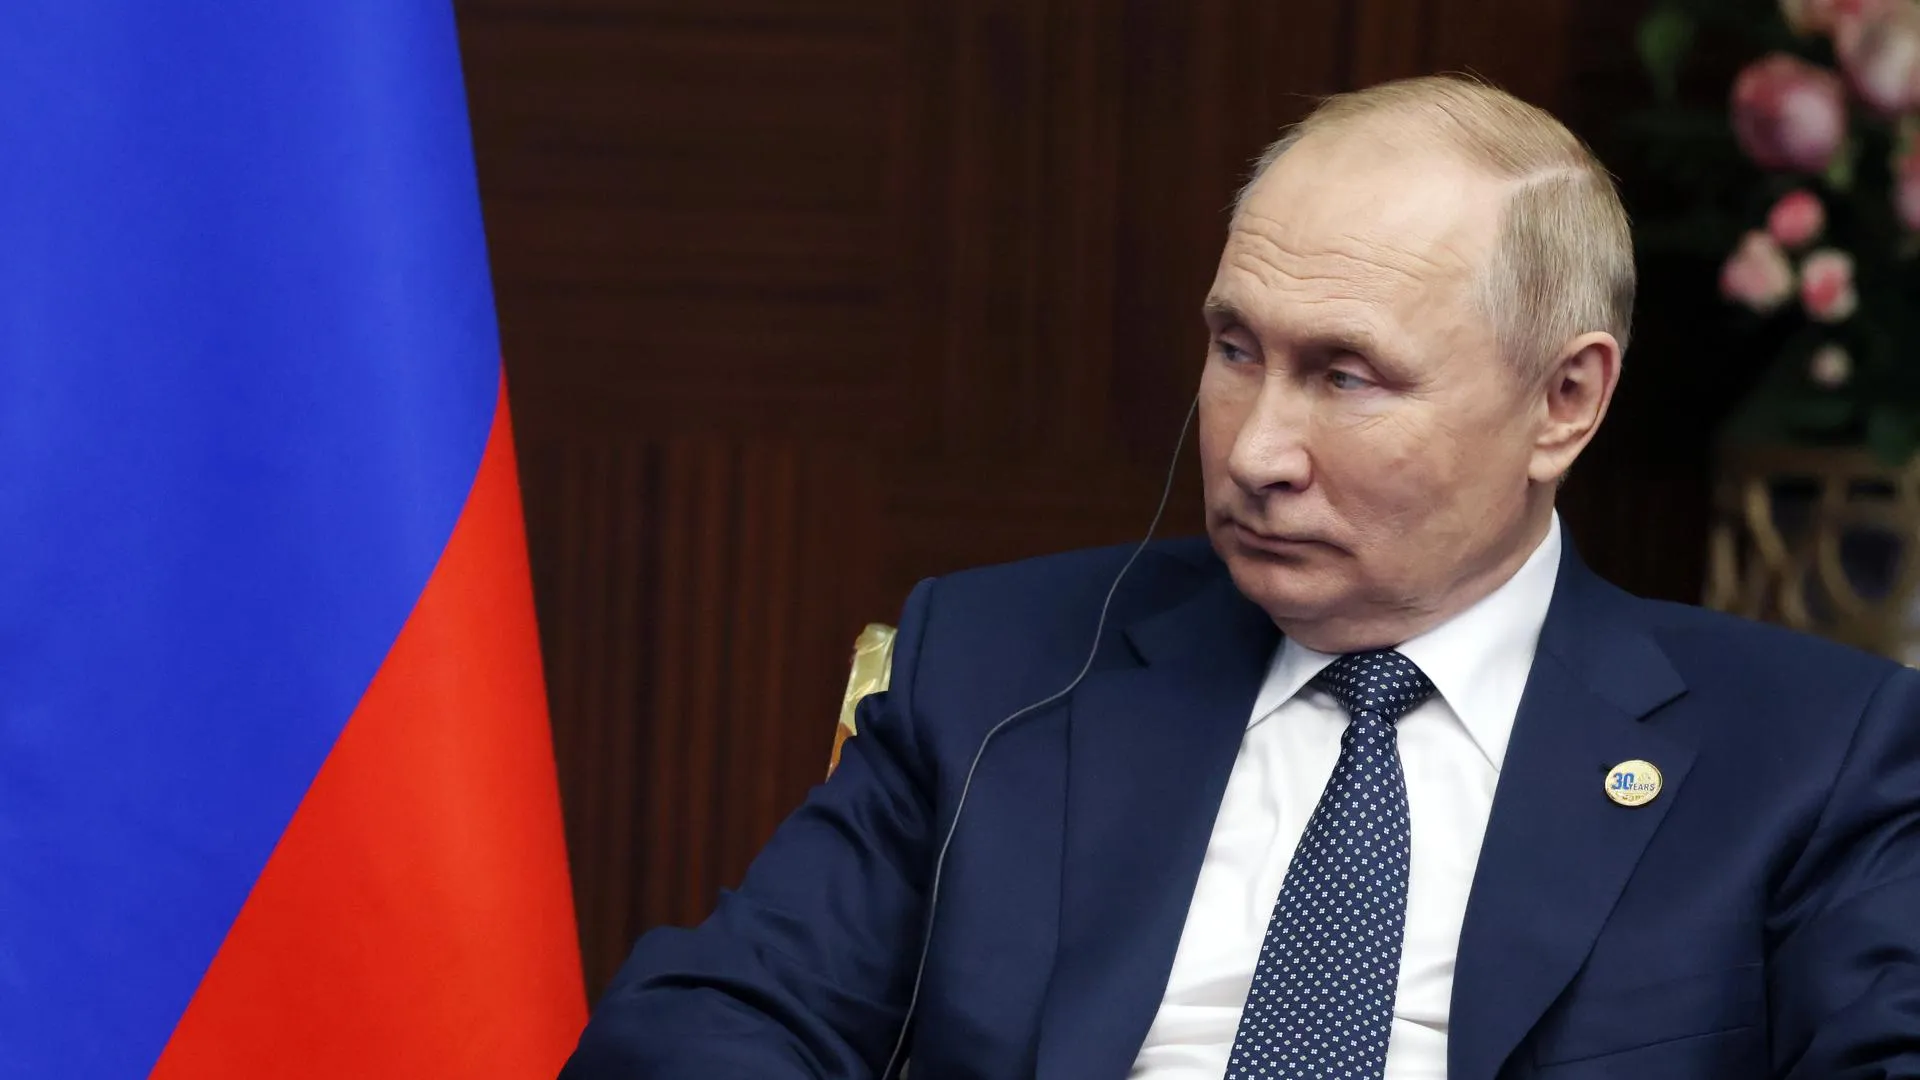 Золотой миллиард живет за чужой счет: на саммите в Астане Путин предложил пересмотреть финансовую систему мира